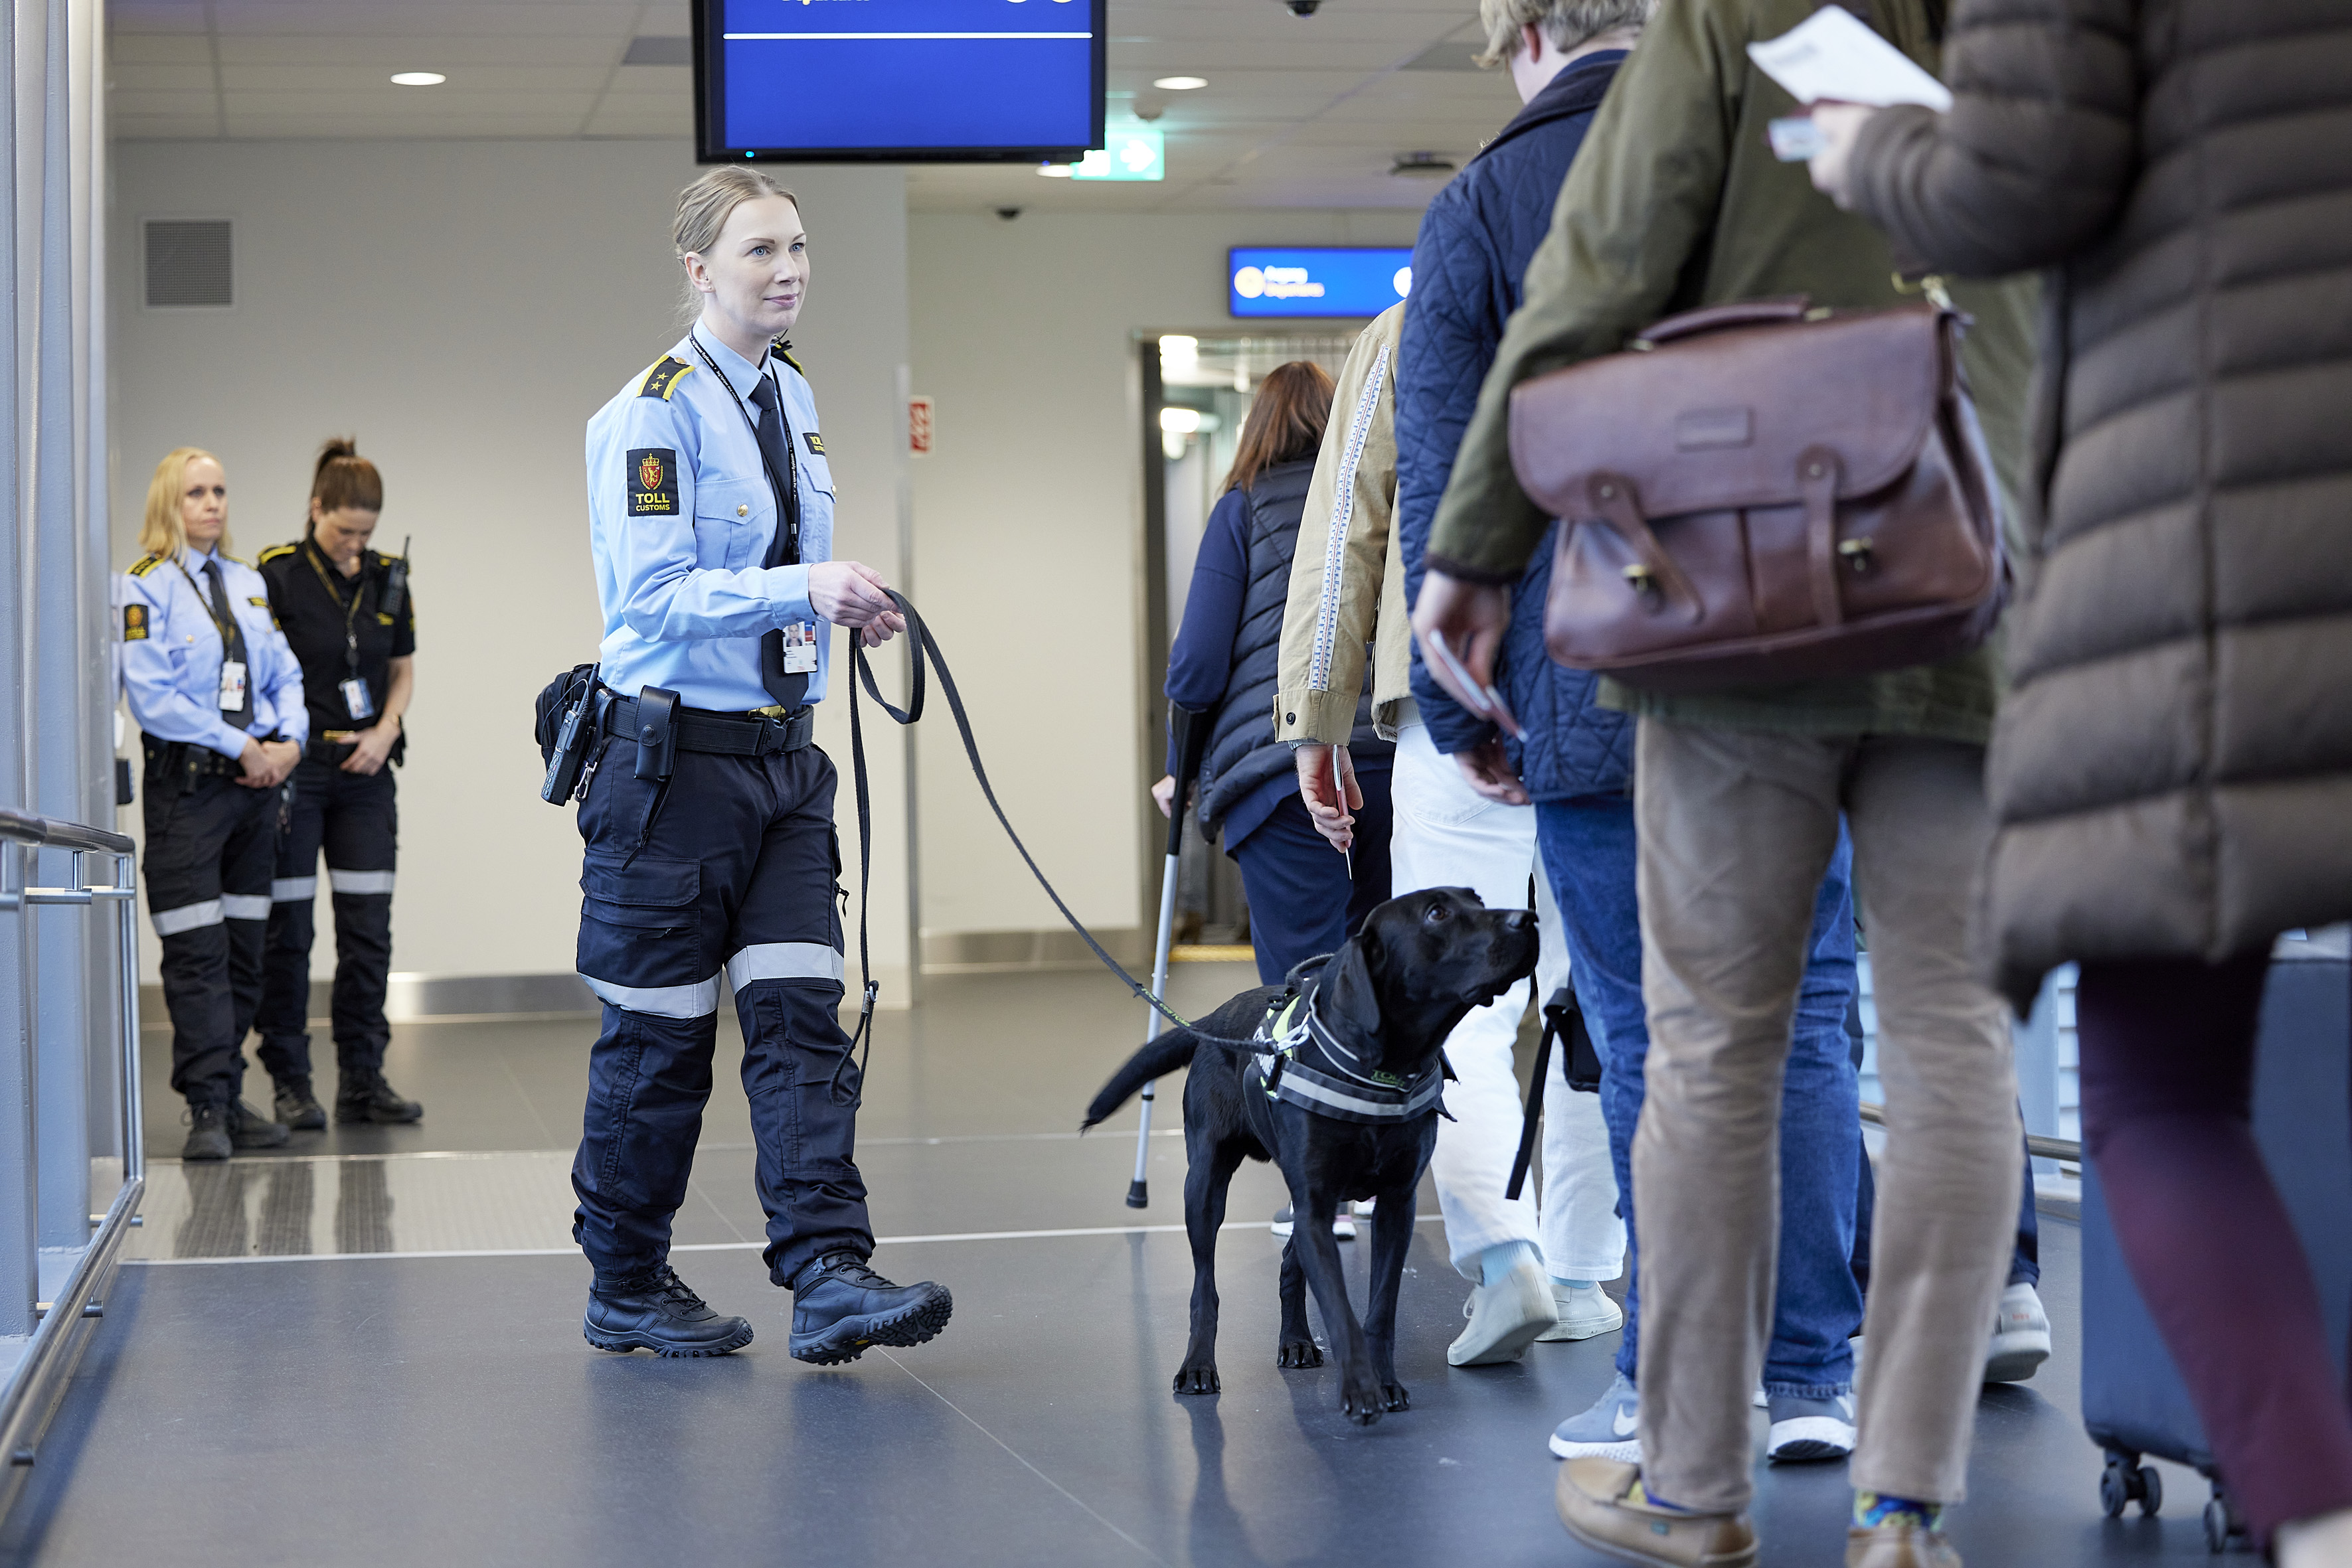 Hundetjenesten - kontroll med valutahund. Foto fra Oslo lufthavn. Foto: Mark Purnell/Tolletaten.